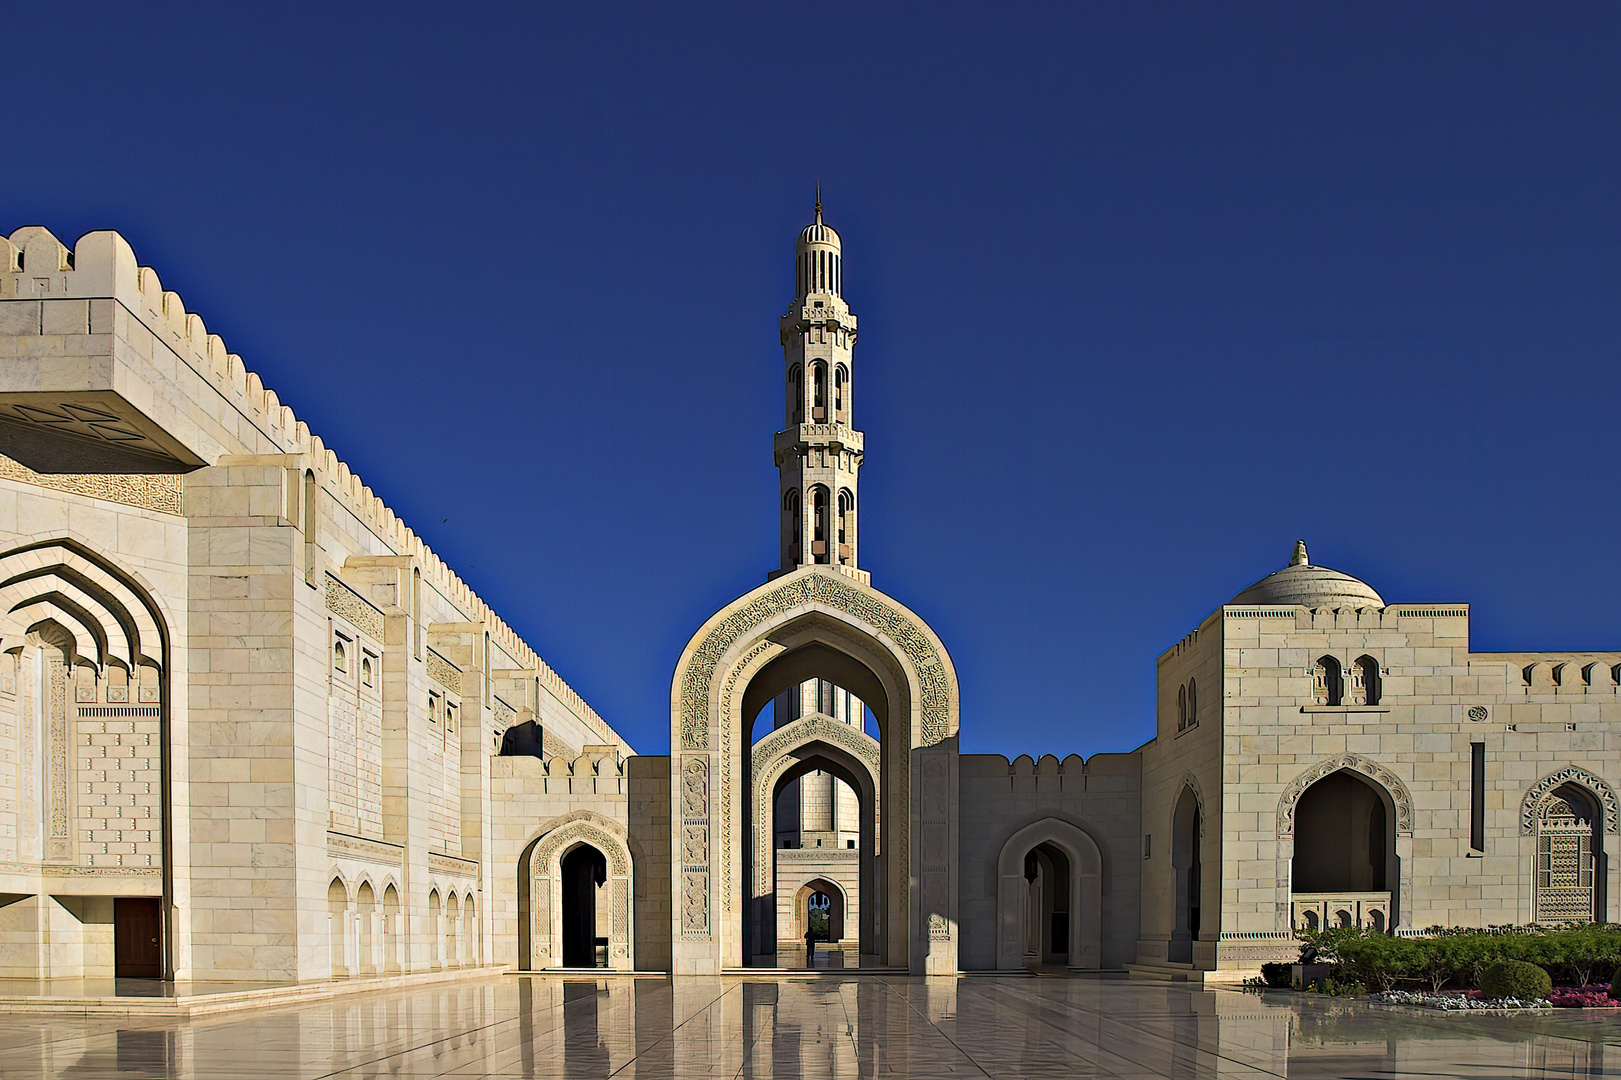 Sultan Qaboos Mosque vom Eingang her gesehen